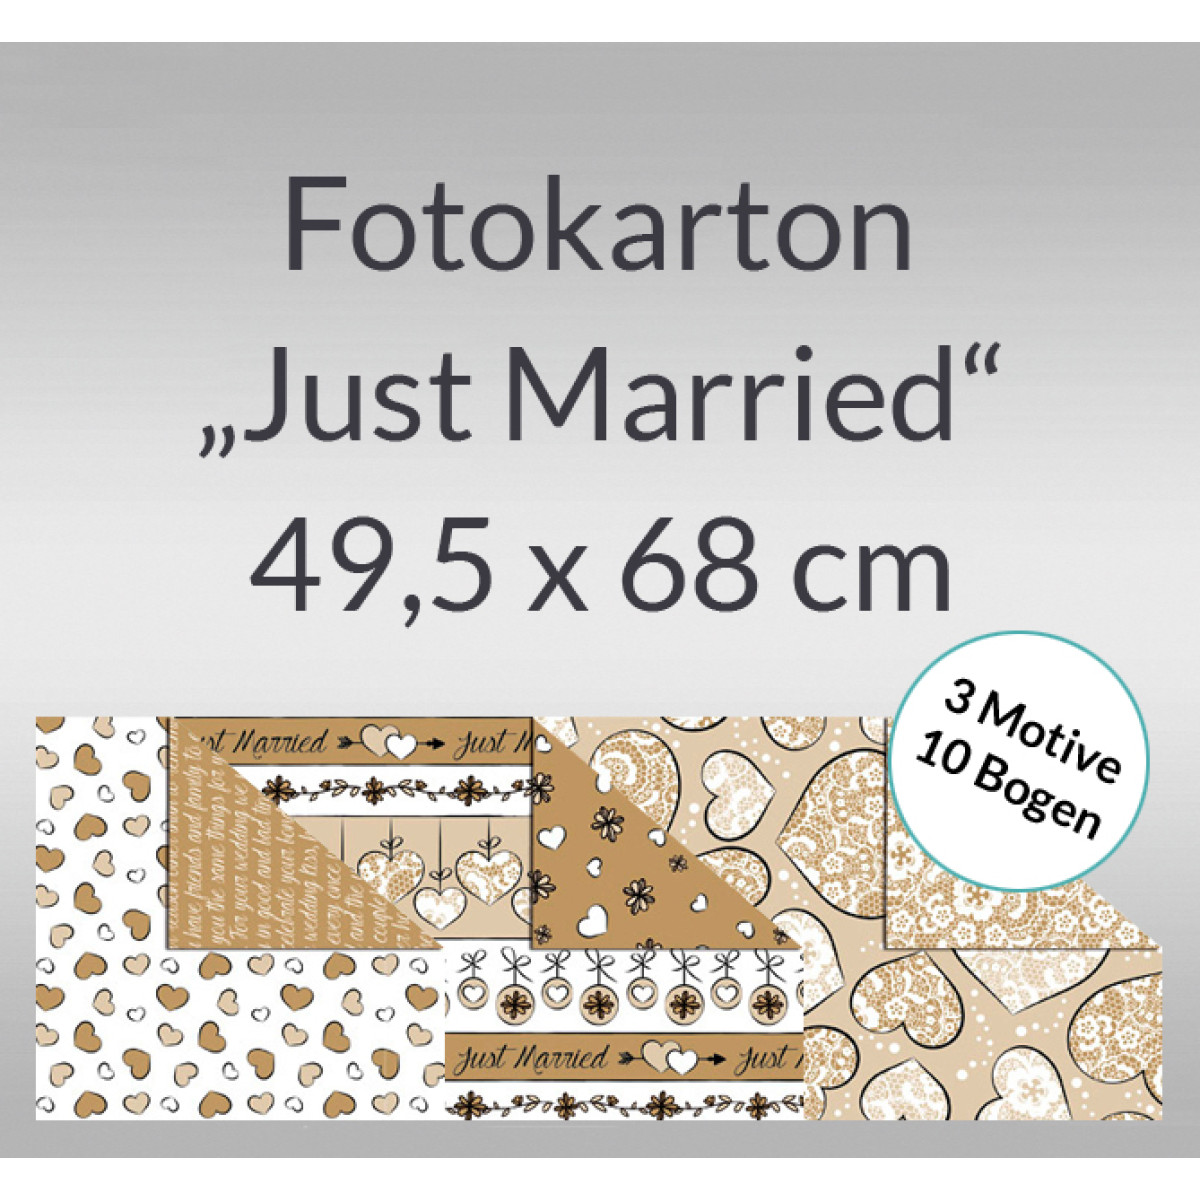 Fotokarton "Just Married" 49,5 x 68 cm - 10 Bogen sortiert